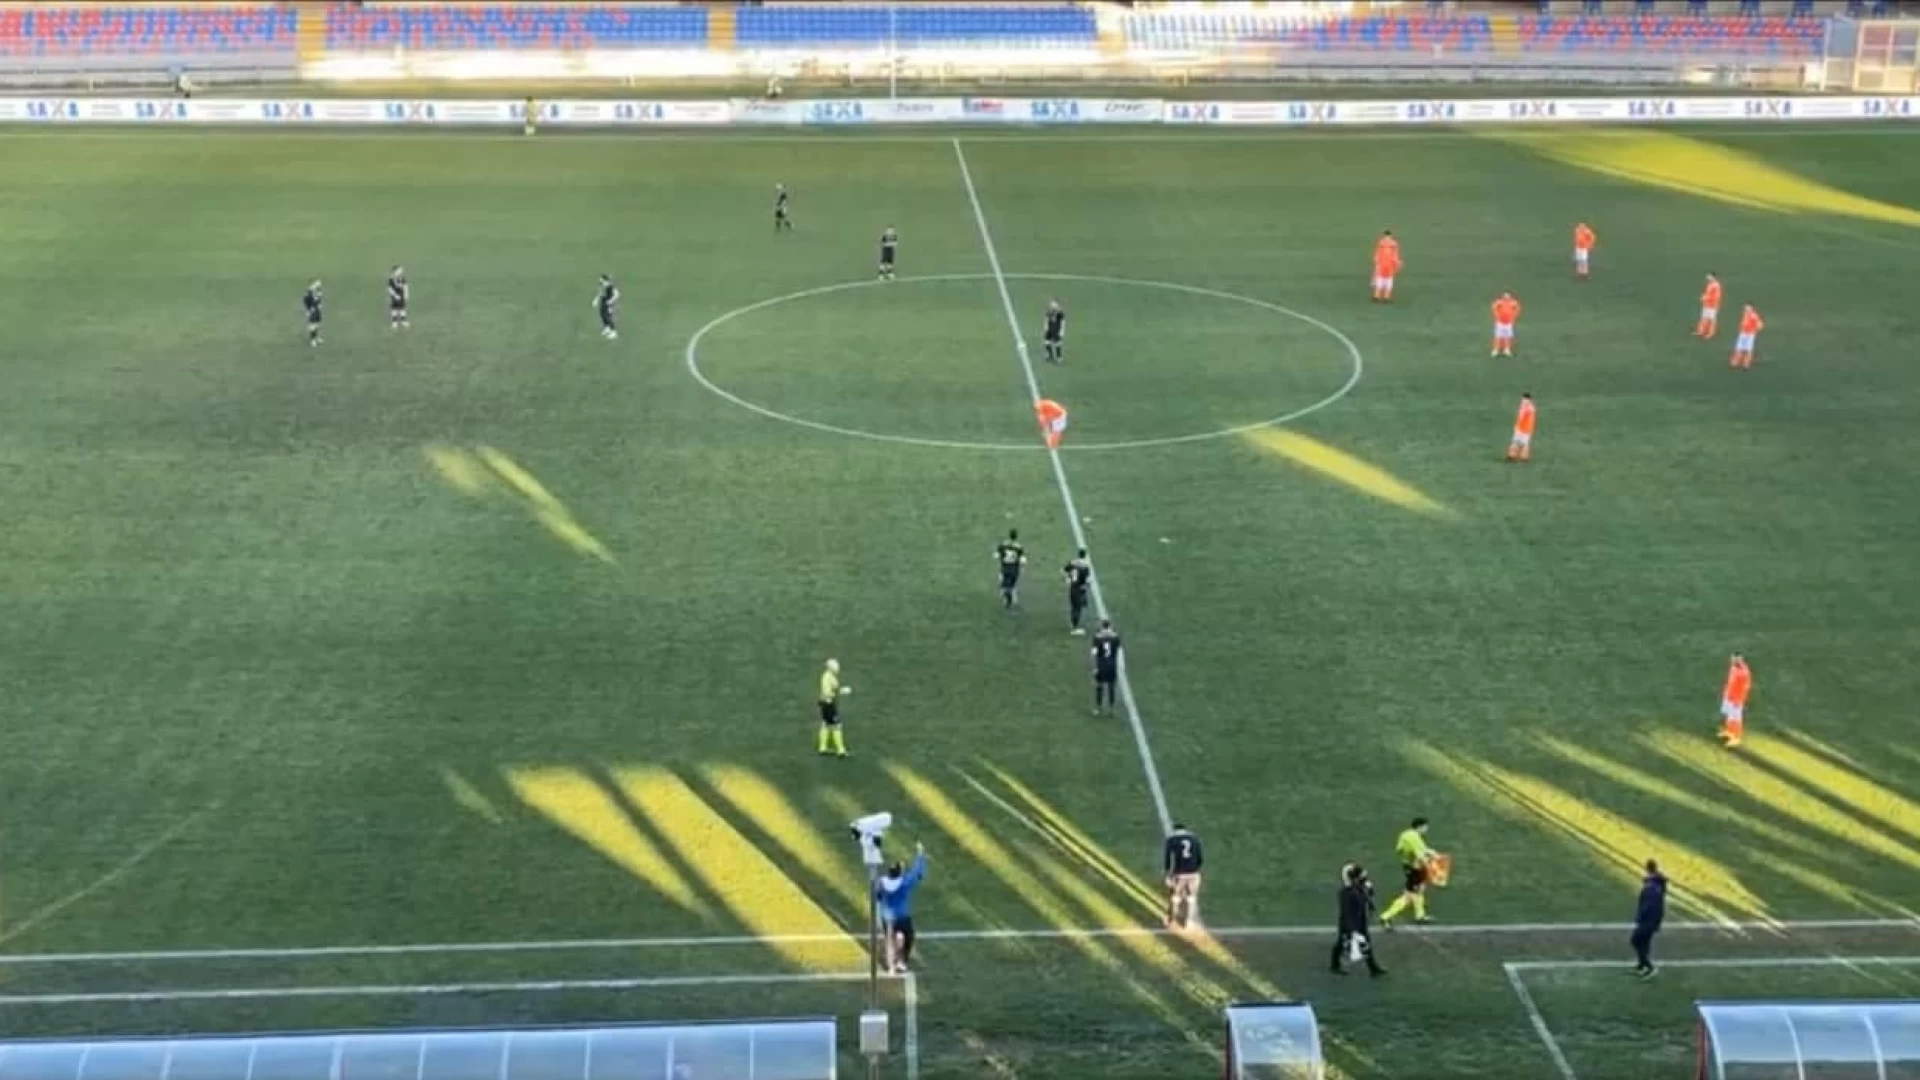 Porto d'Ascoli-Vastogirardi 3-2 , la cronaca del match.